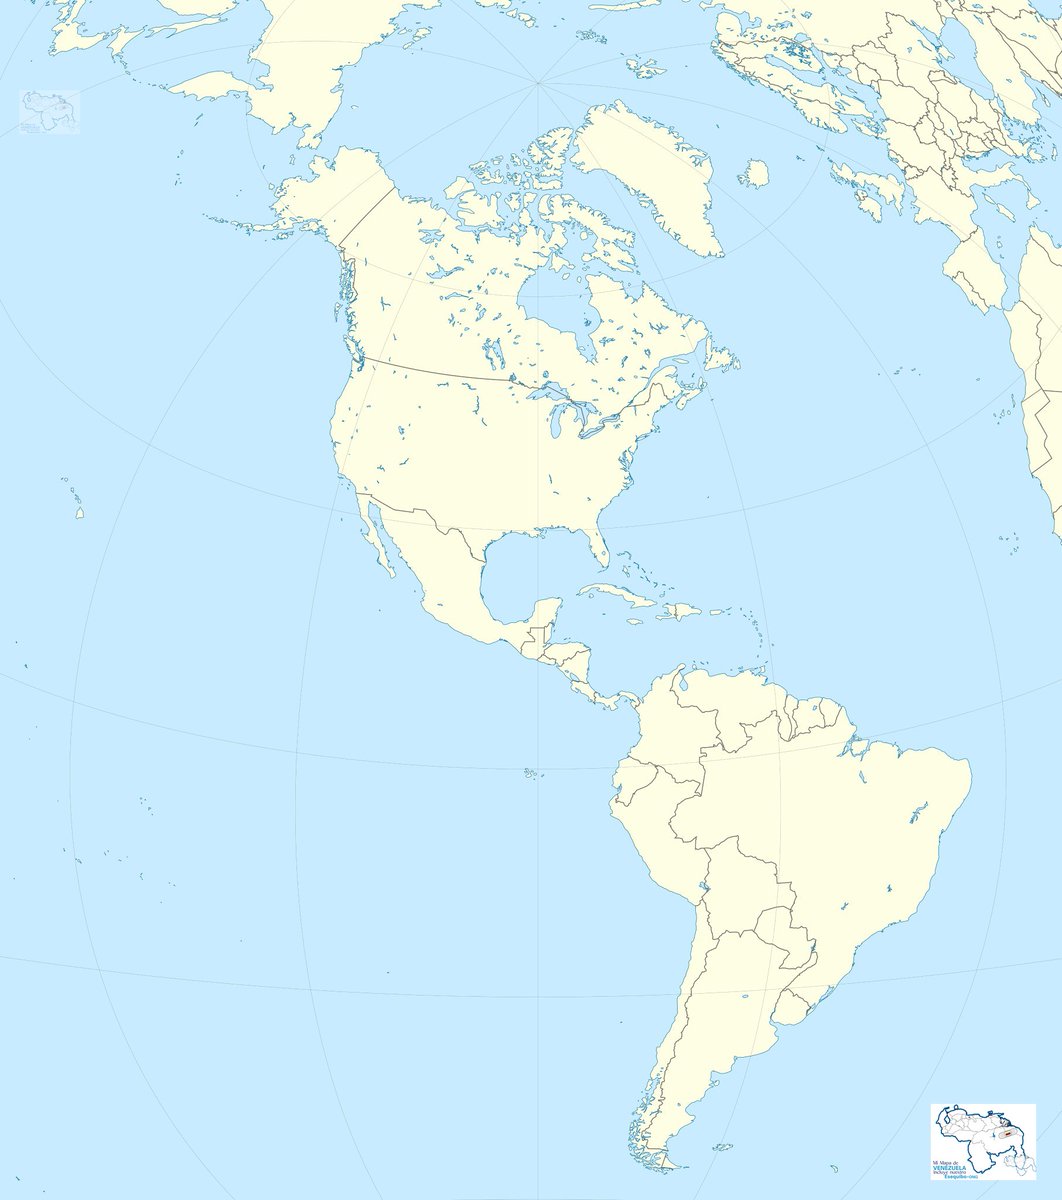 ¿Qué les parece este Mapa de todo el continente americano? #RT #MiMapa #4May #EsequiboEsVenezuela #TigriIsVanSuriname